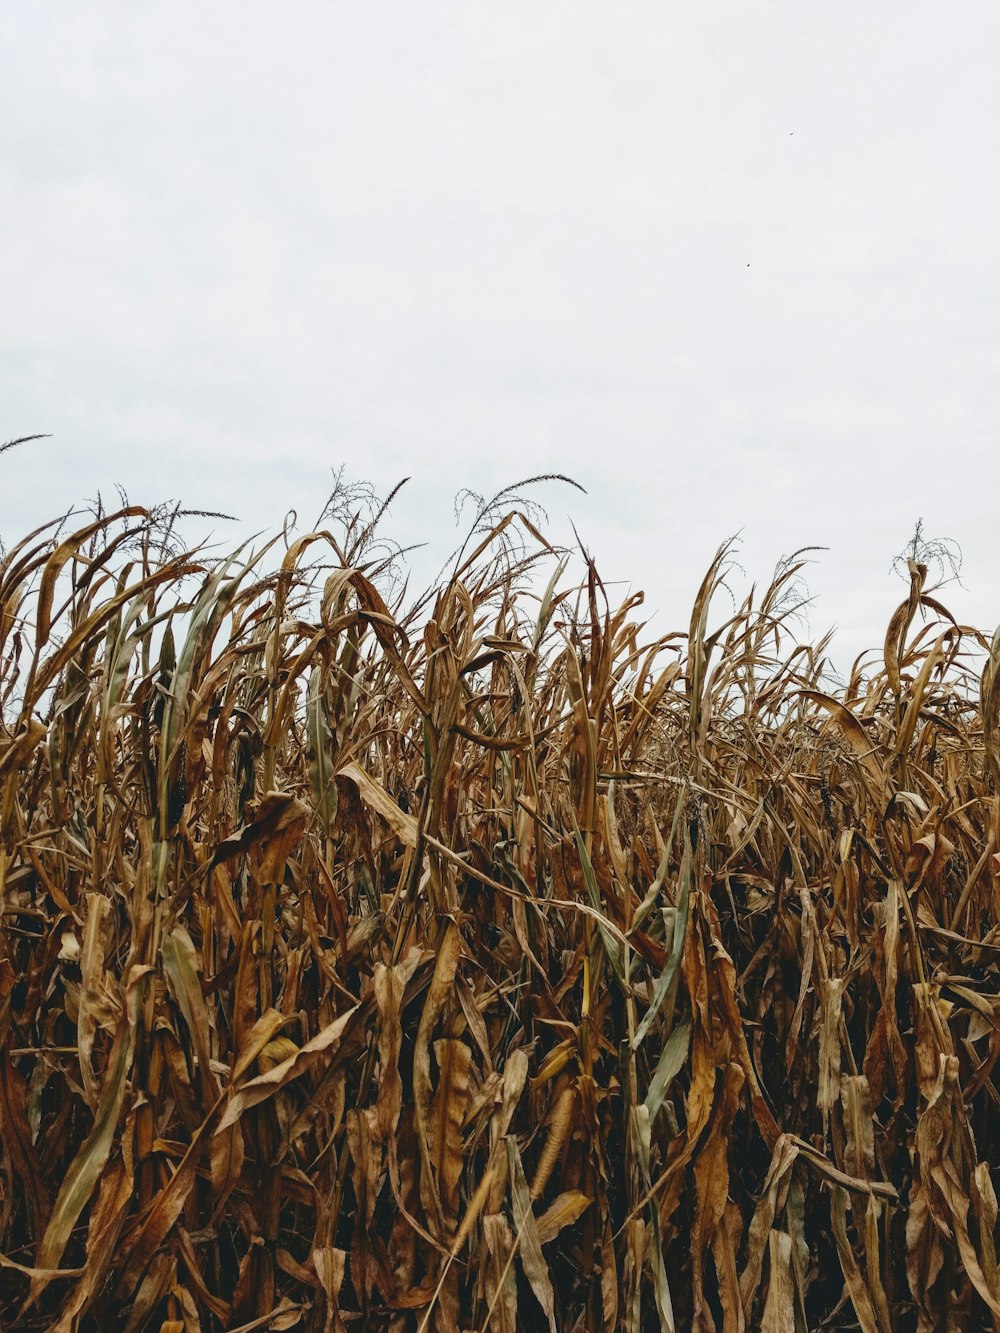 Campo de maíz marrón bajo cielos blancos